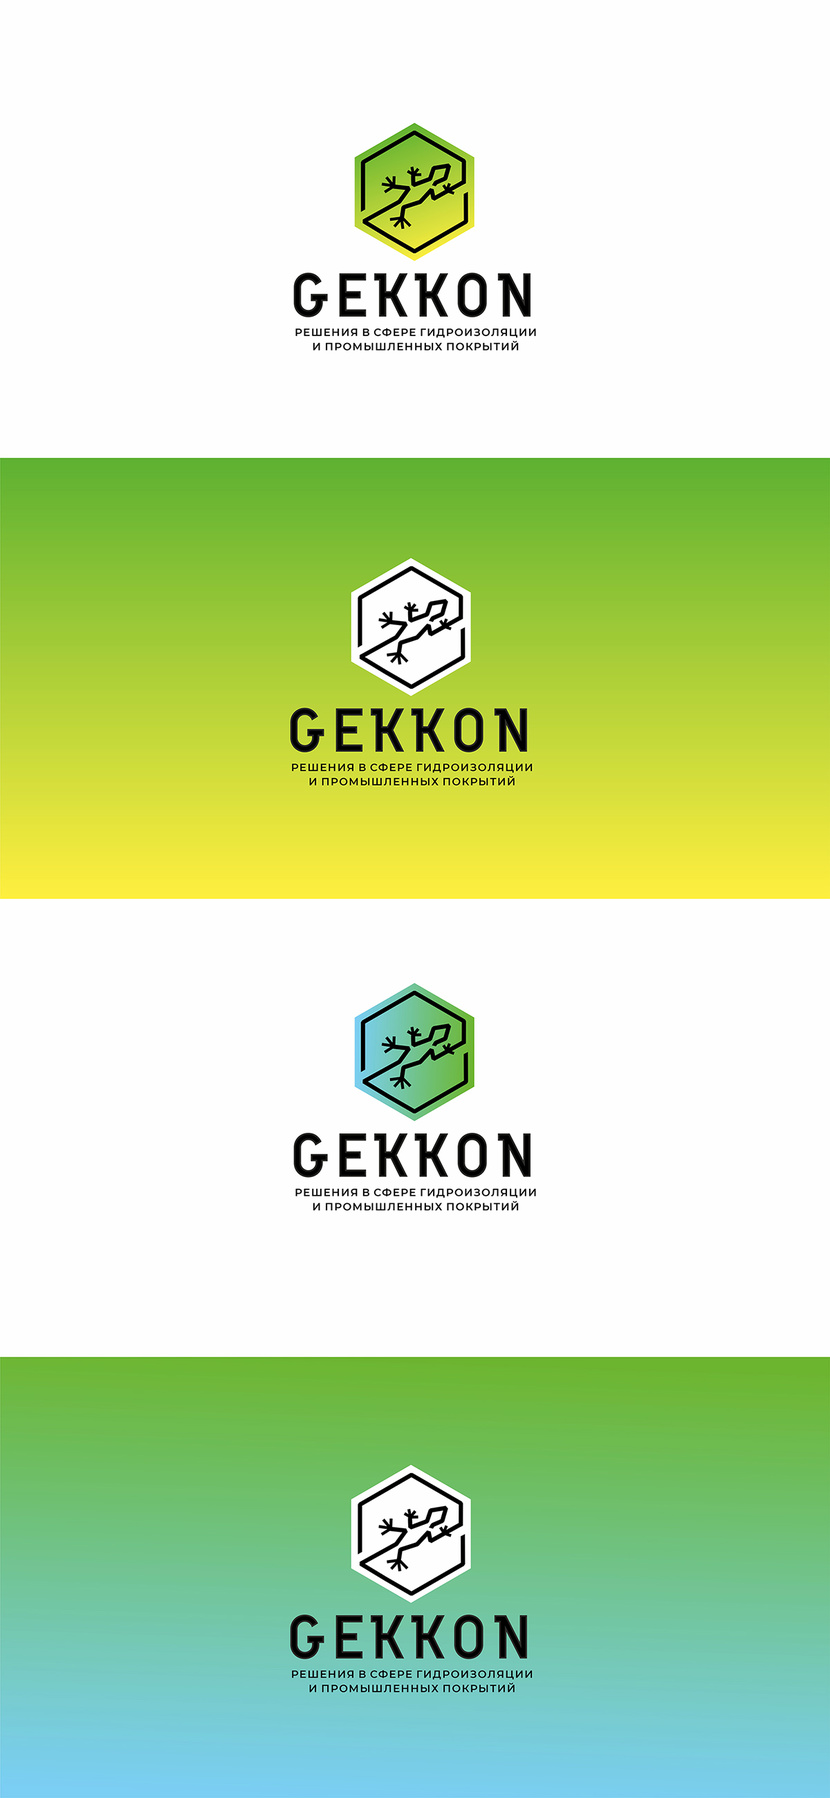 Метафоры в знаке: химический элемент, геккон, инь-янь (взаимодействие химических элементов), устойчивость, монолитность. - Логотип для производства полиуретановых материалов марки "Gekkon"